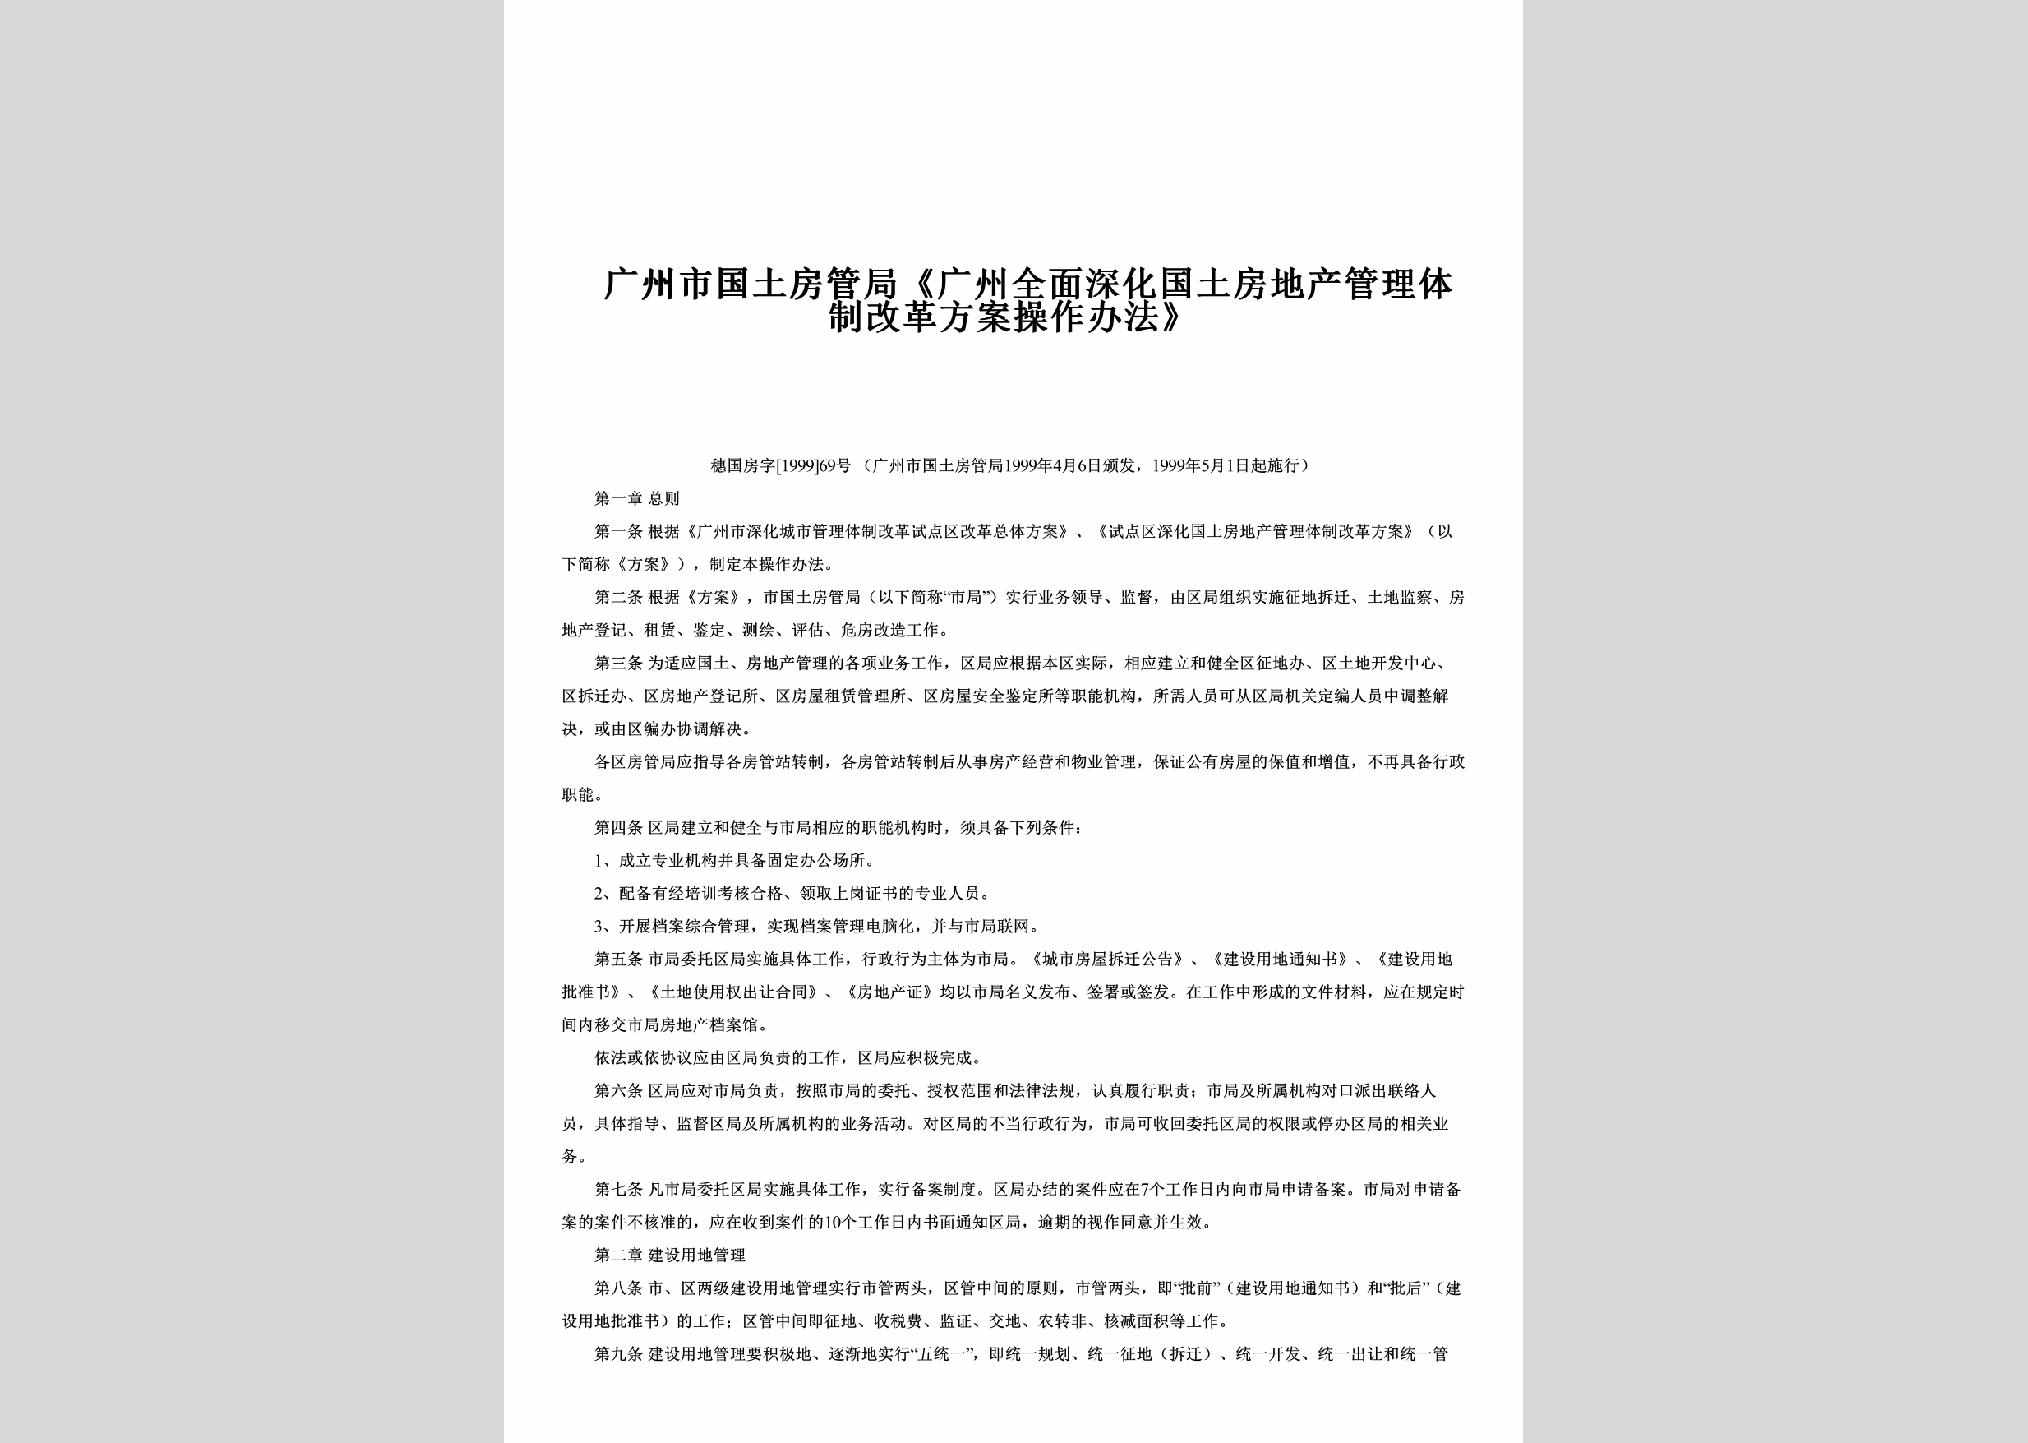 穗国房字[1999]69号：《广州全面深化国土房地产管理体制改革方案操作办法》